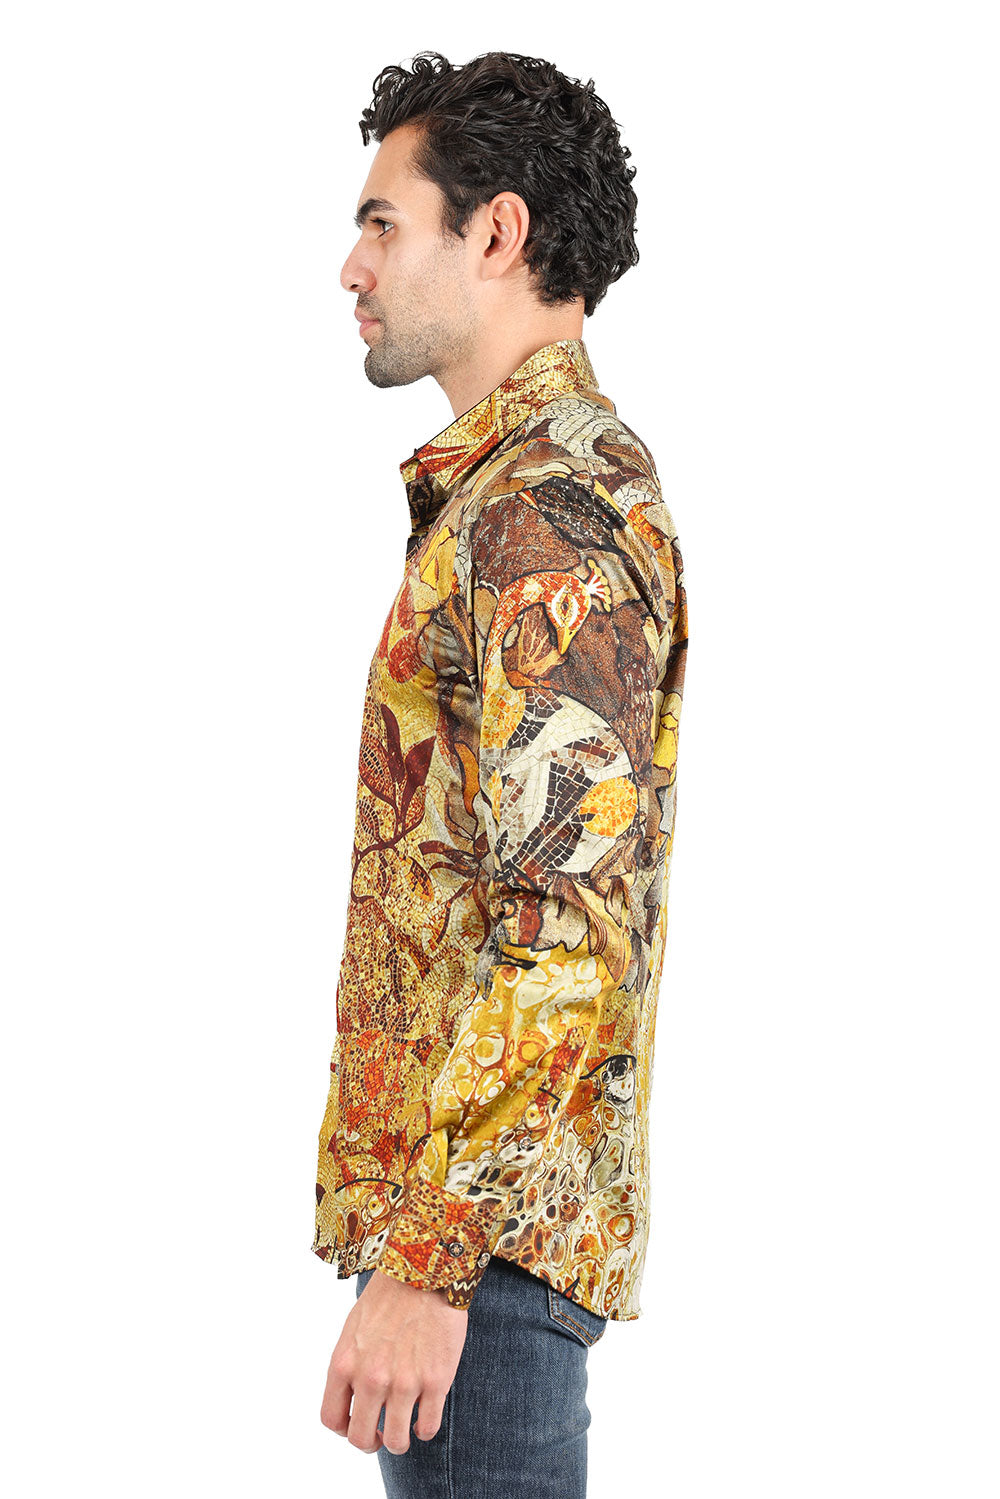 BARABAS men's Peacock Abstract printed long sleeve shirts 2SP31 Caramel